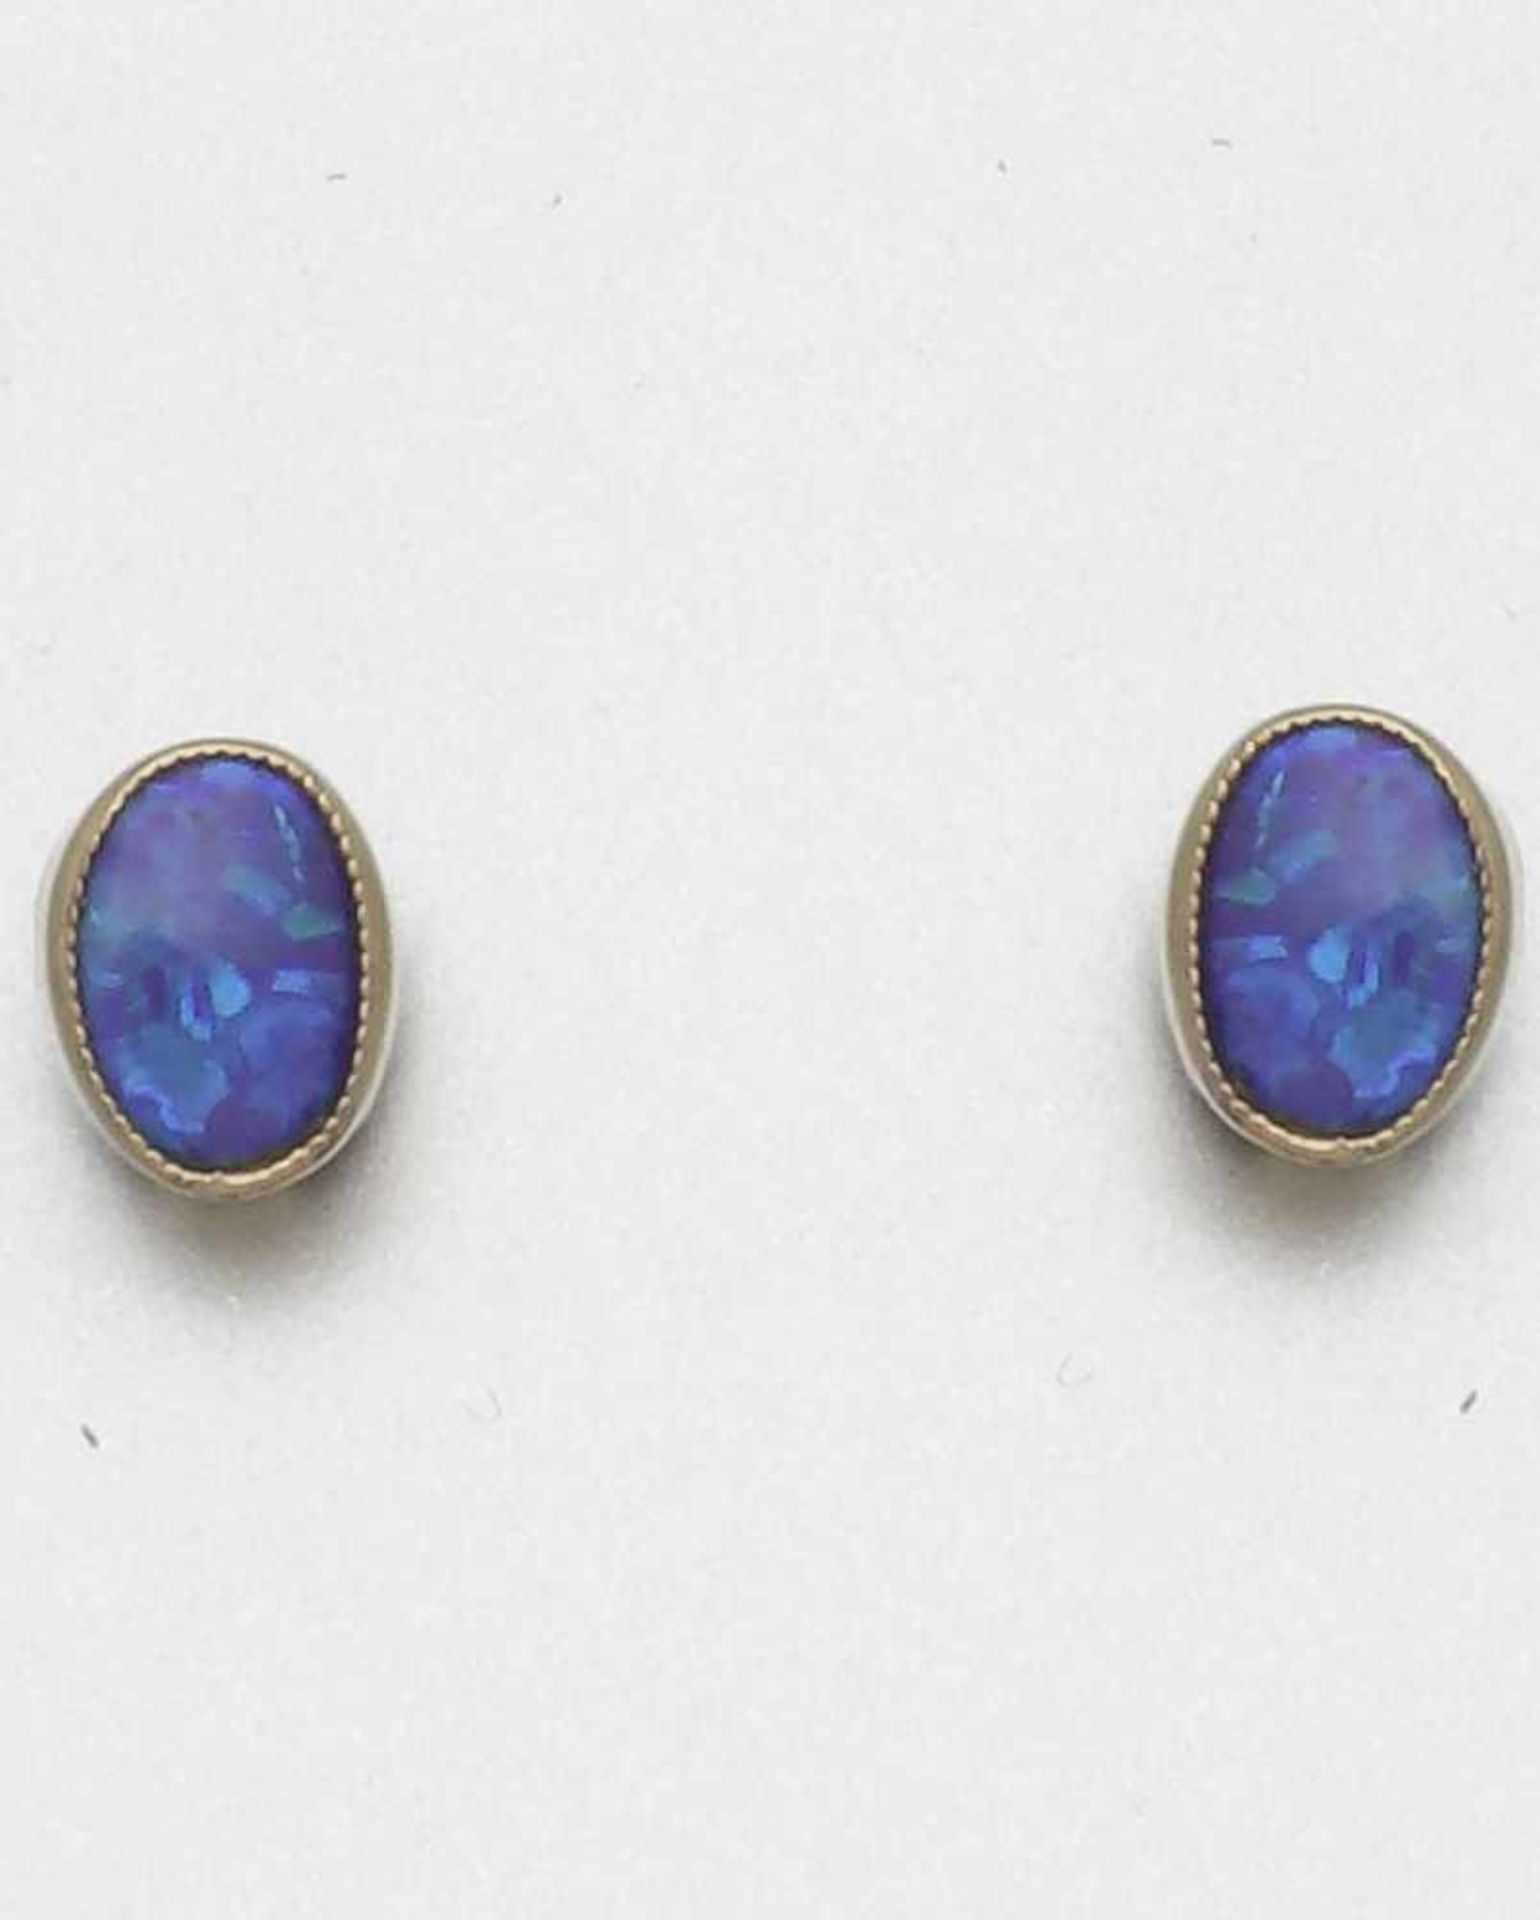 Paar Opal-Ohrstecker 333er GG, gestemp. Opale im Oval. D. 0,78 cm. Gew.: 1,6 g. Ohrstecker, Opal